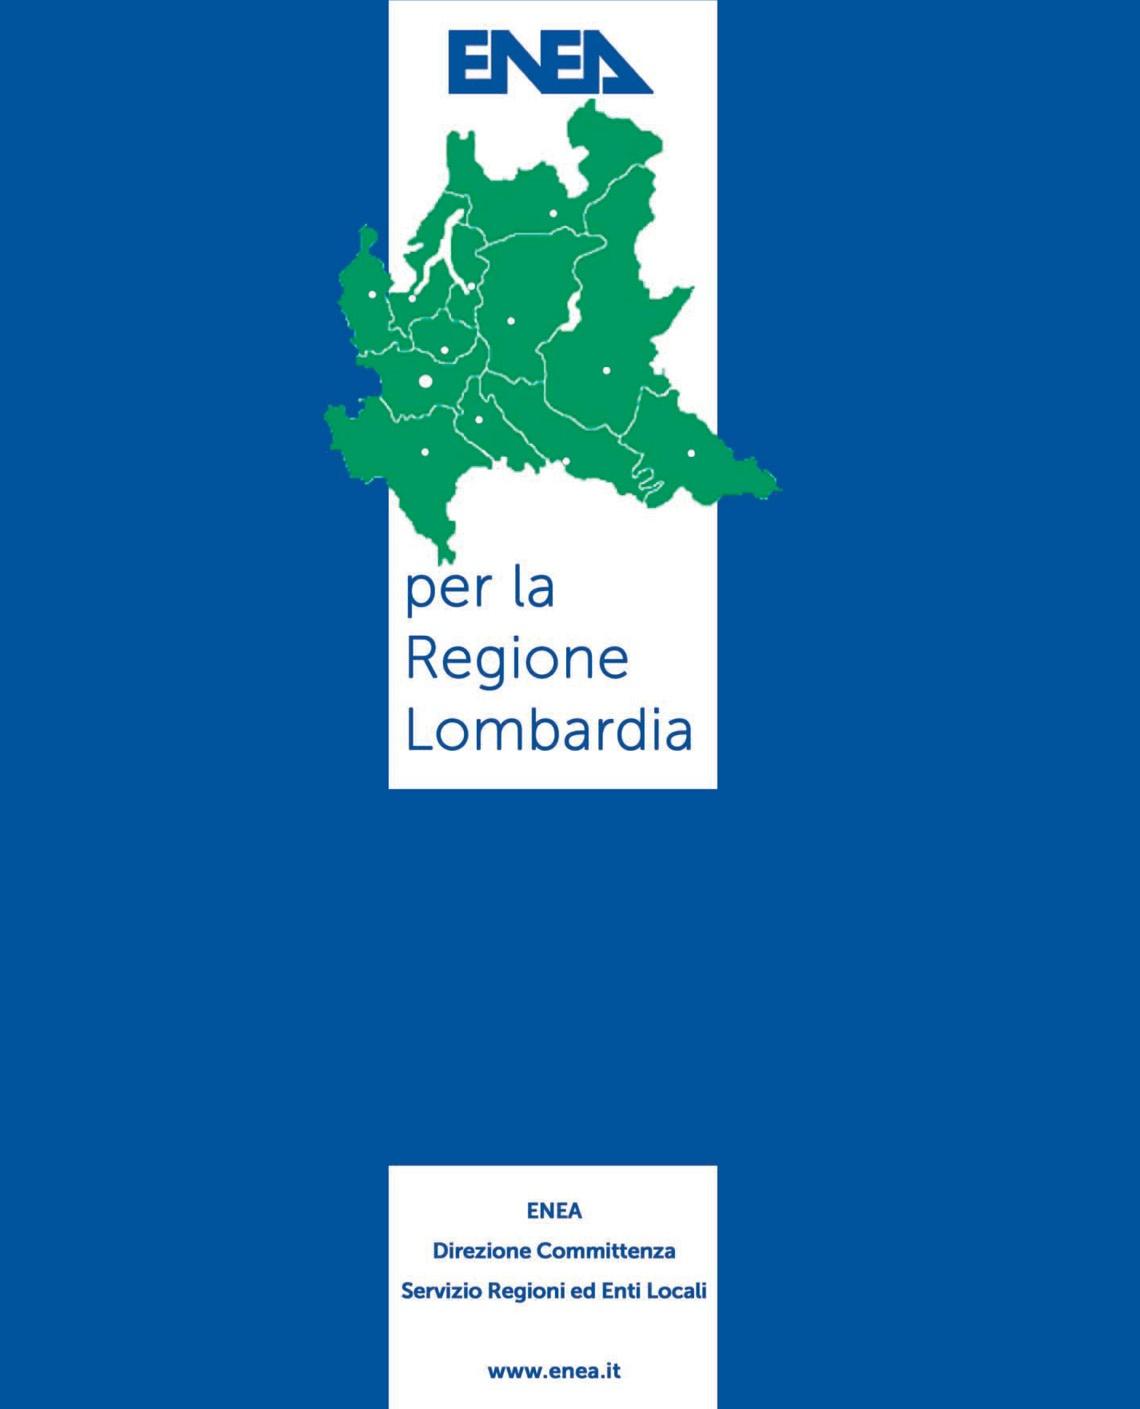 ENEA per la Regione Lombardia